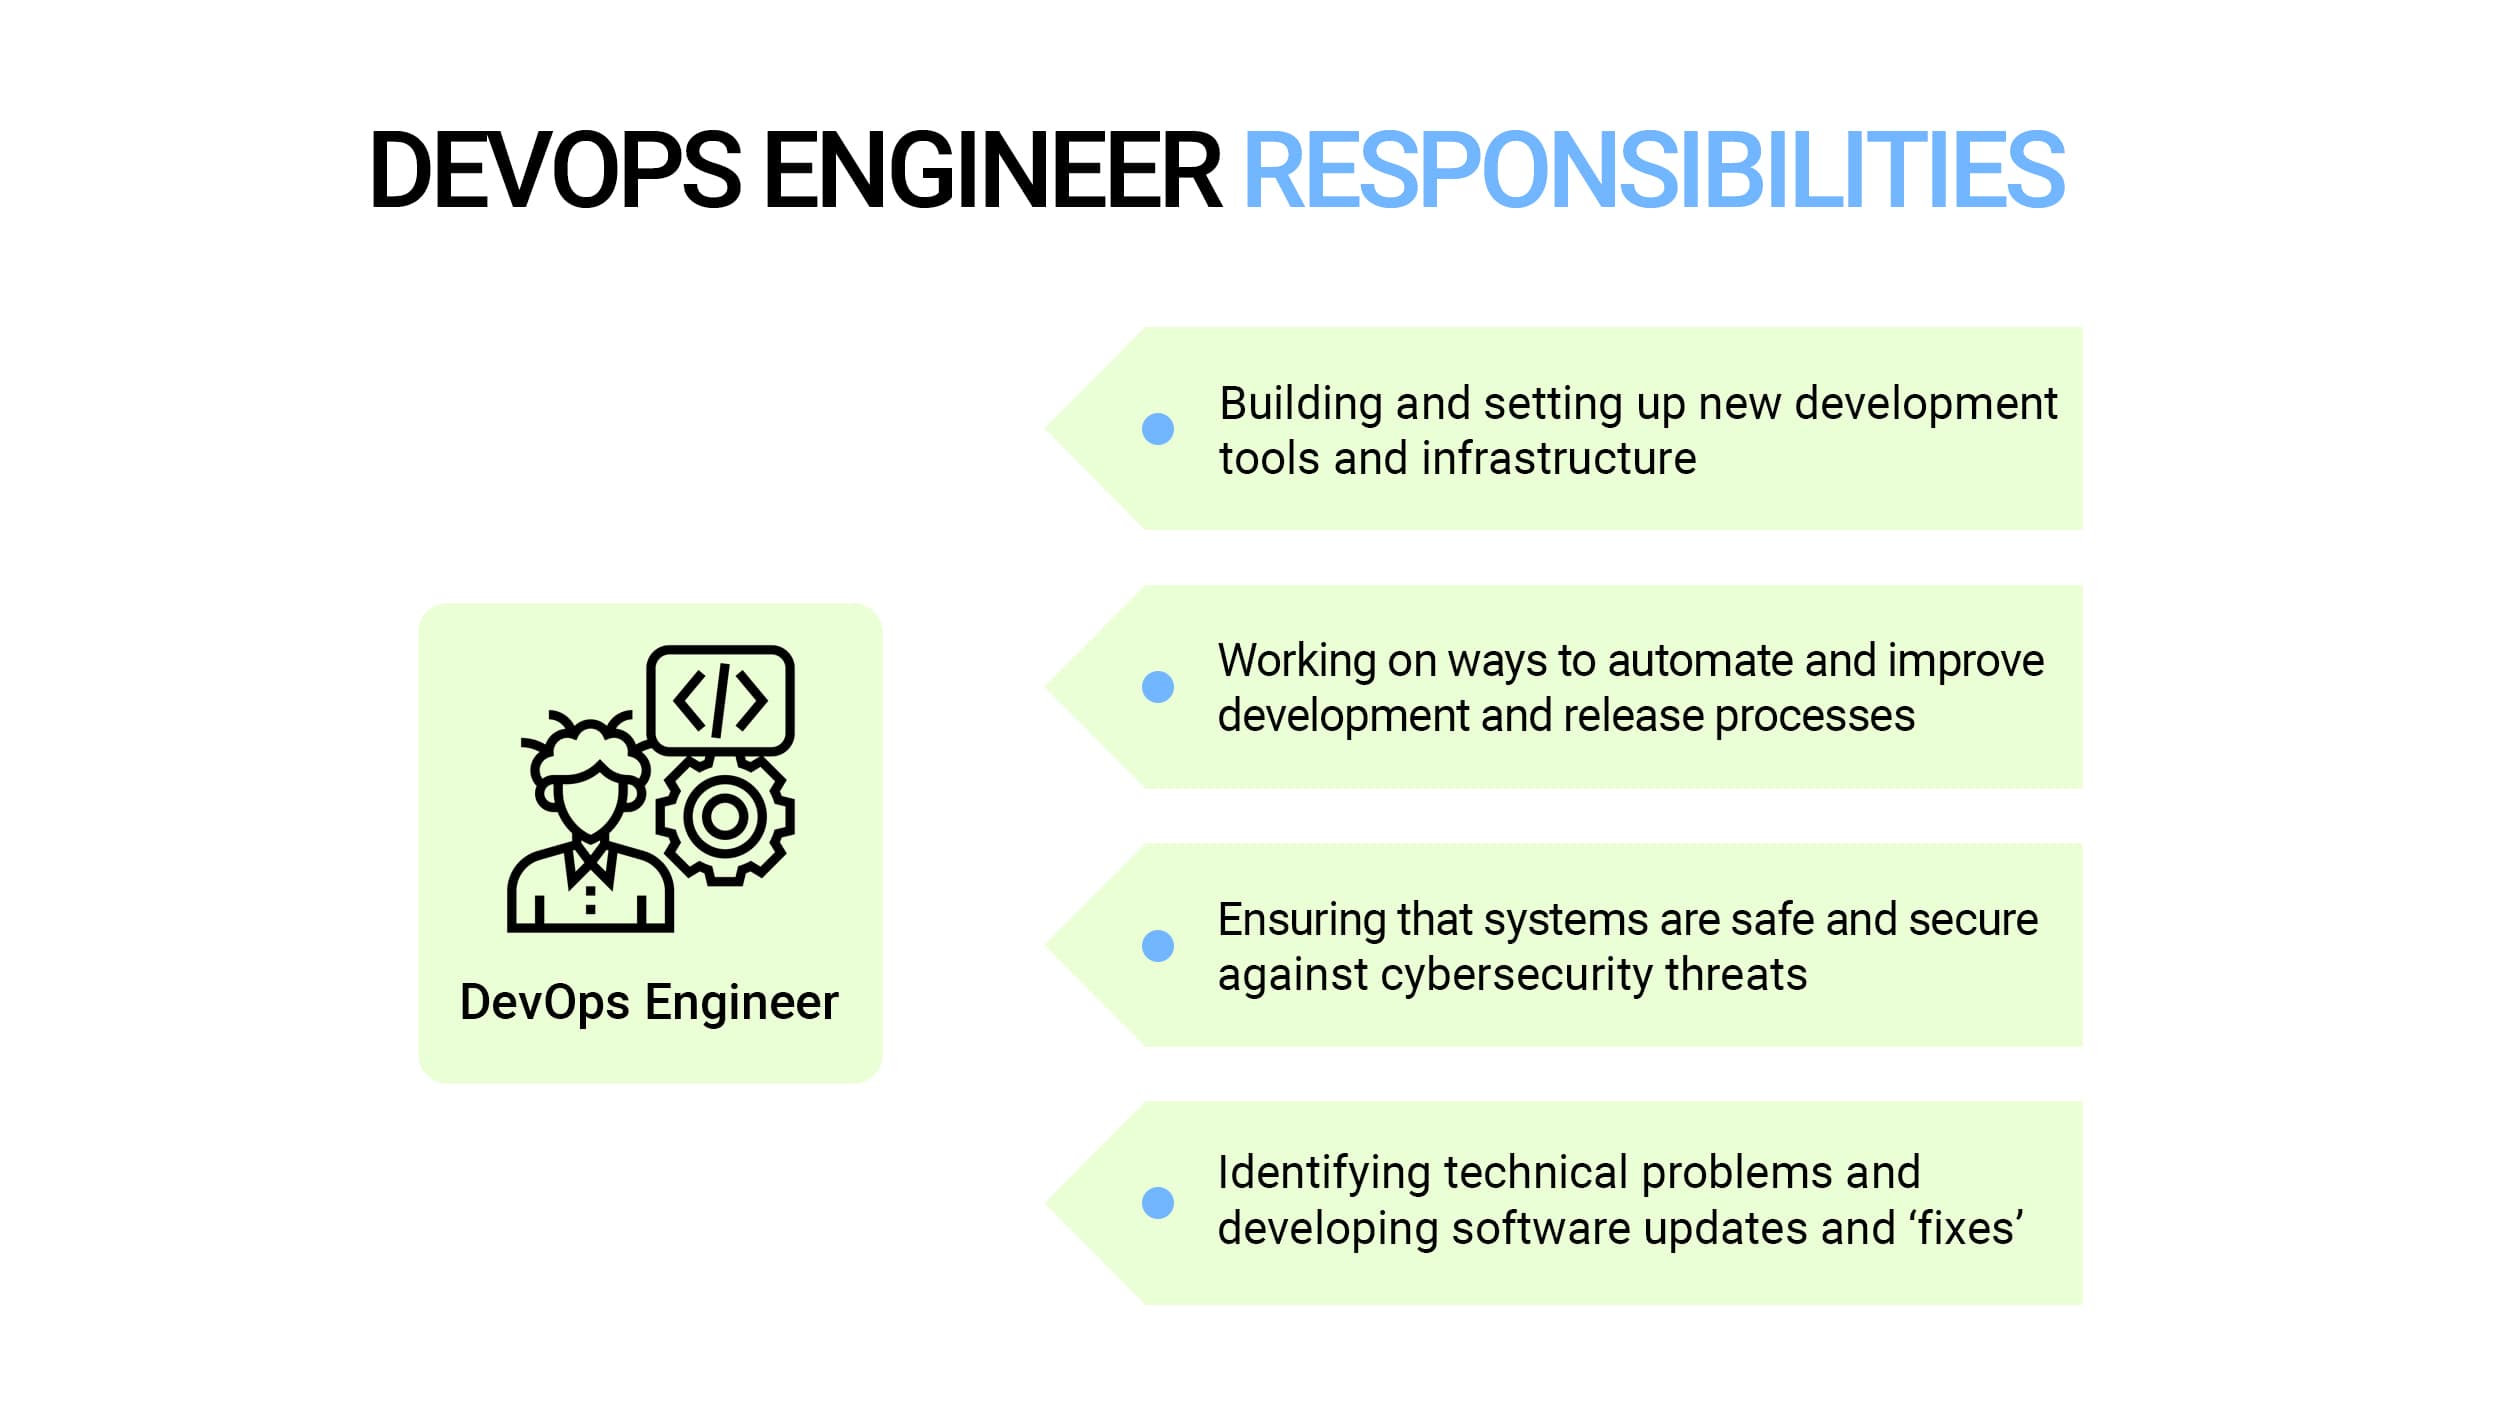 DevOps engineer responsibilities